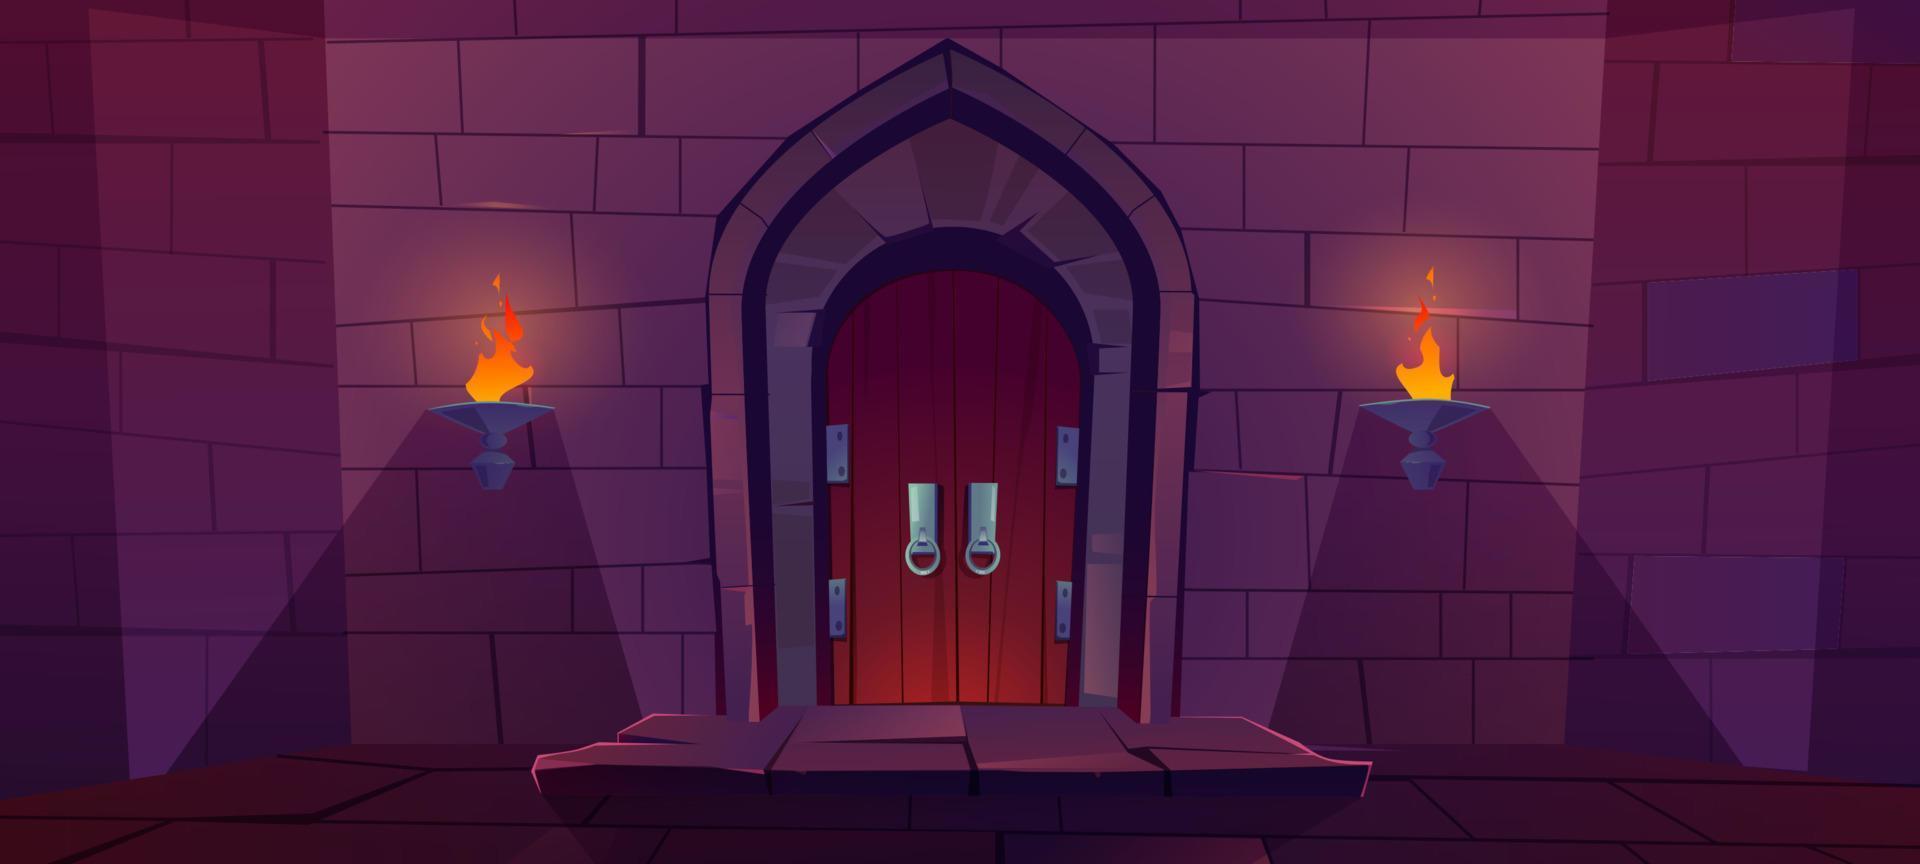 Wood door in medieval castle or dungeon vector